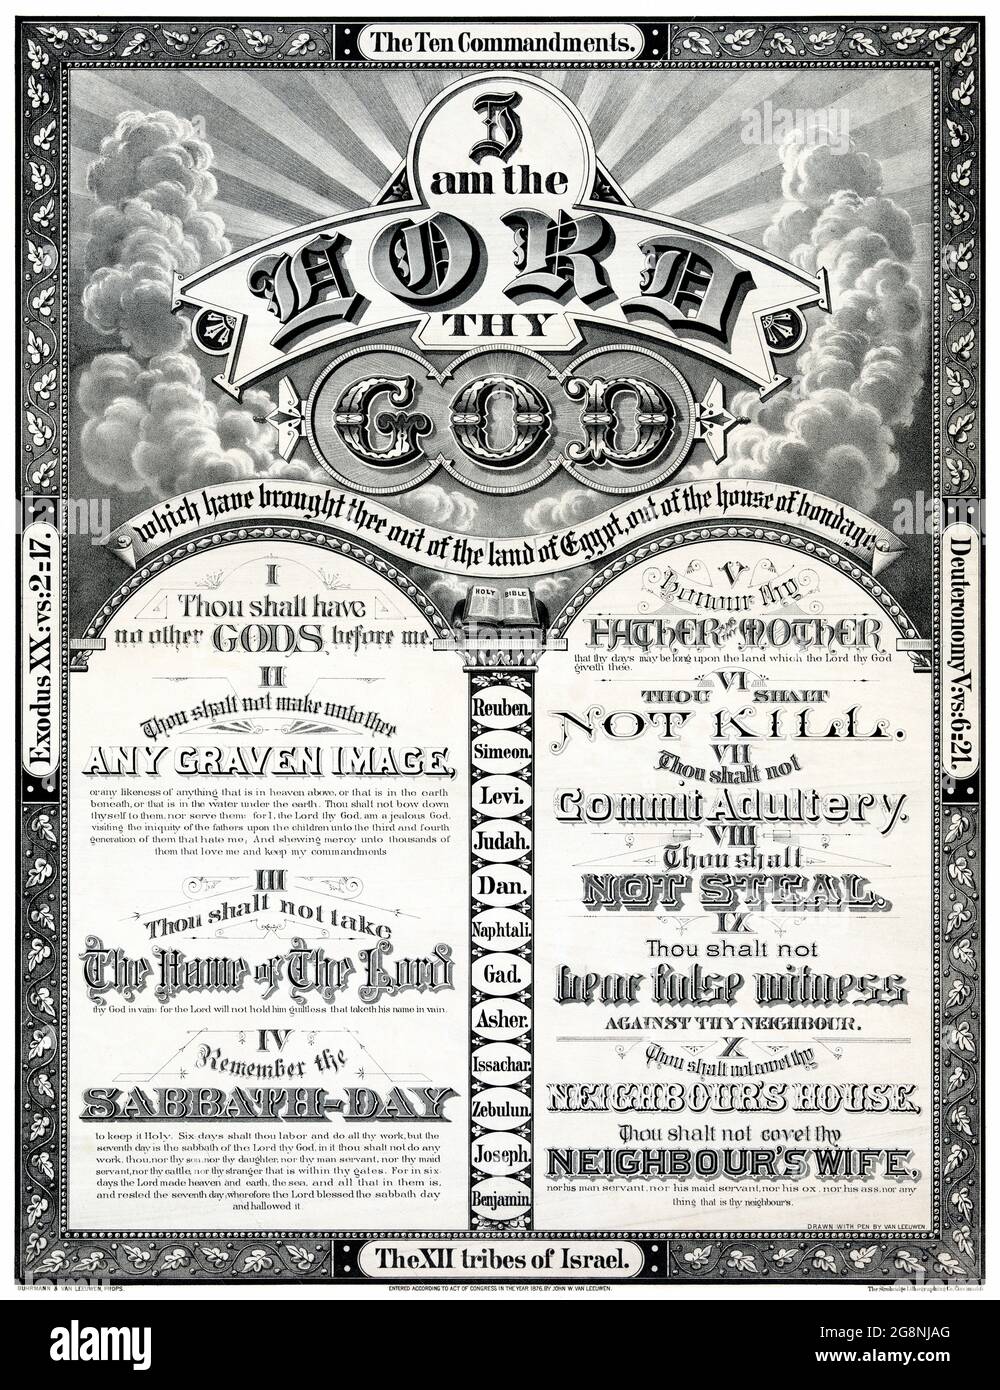 I am the Lord thy God von John W. van Leeuwen (Termine unbekannt) restauriertes Vintage-Poster, das 1876 in den USA veröffentlicht wurde. Stockfoto